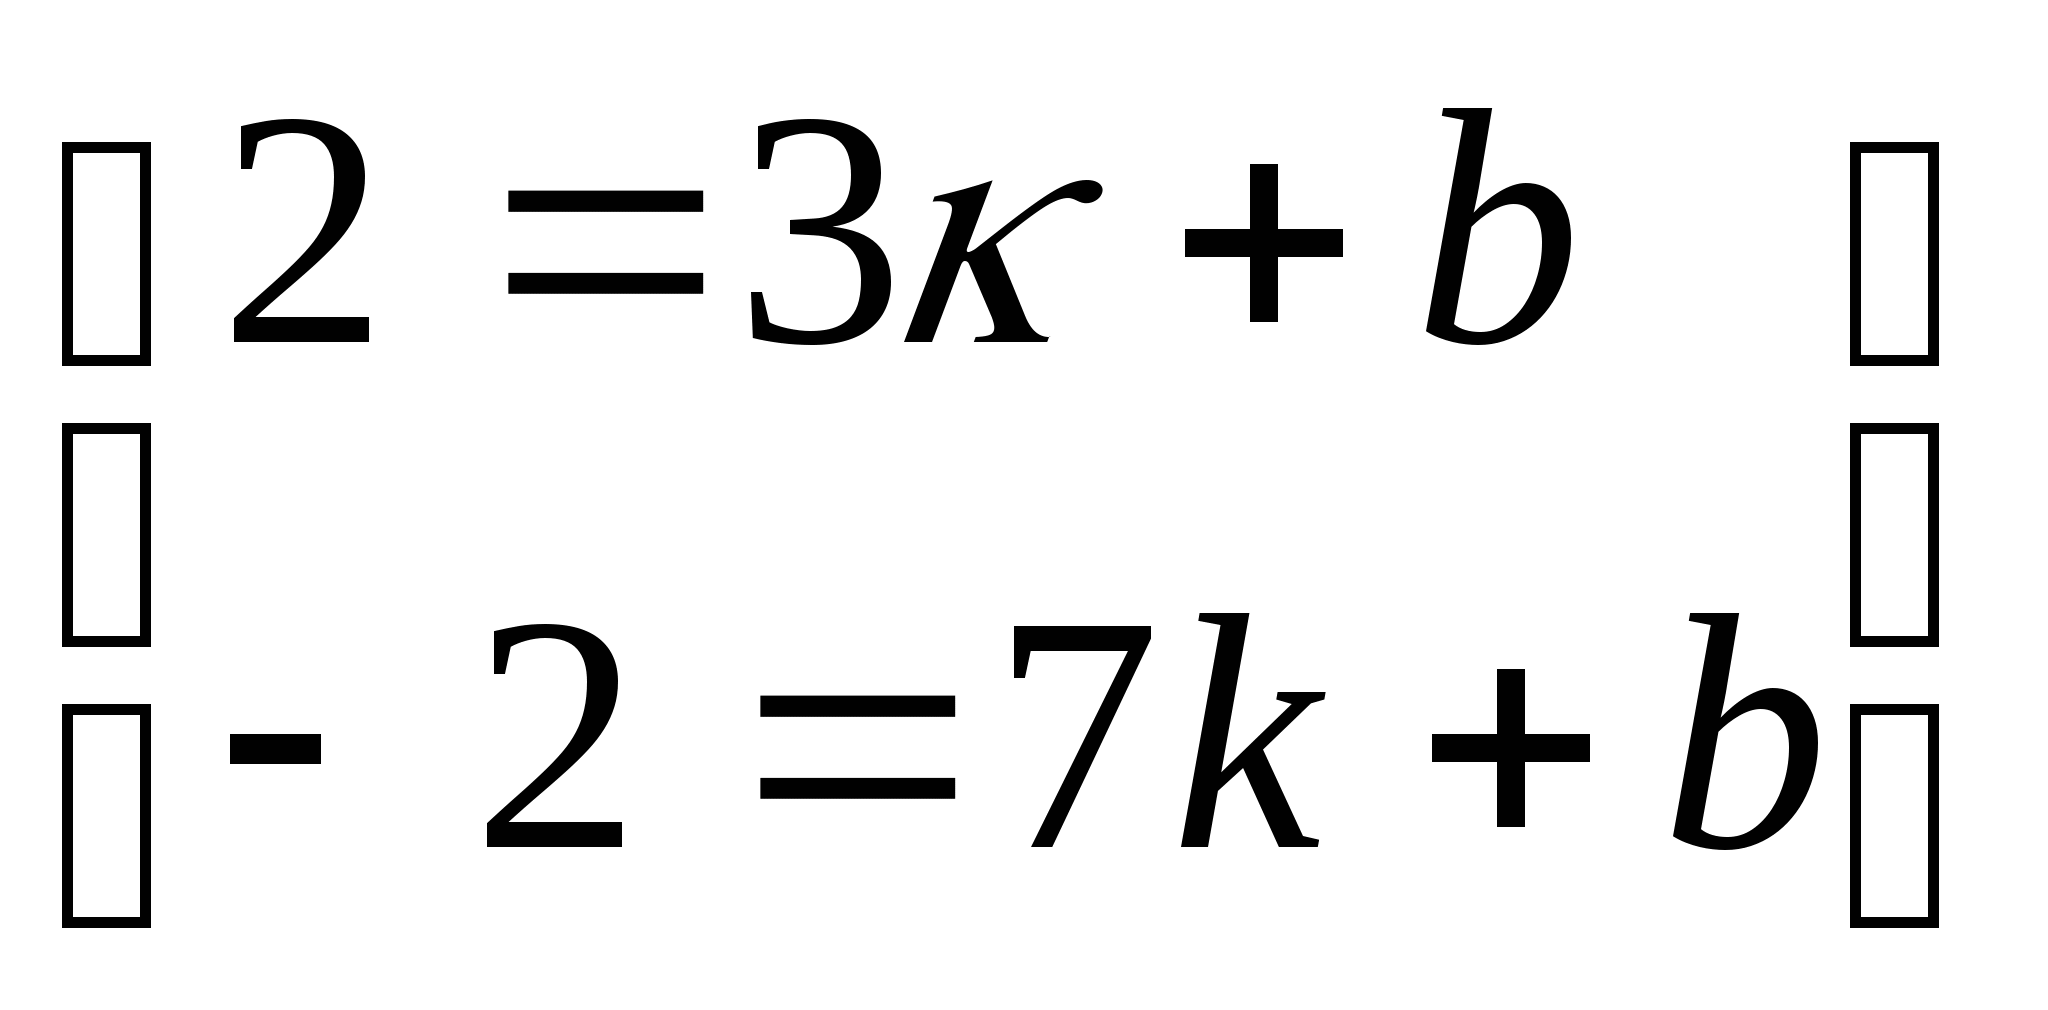 Решение уравнений, систем уравнений и неравенств с двумя переменными